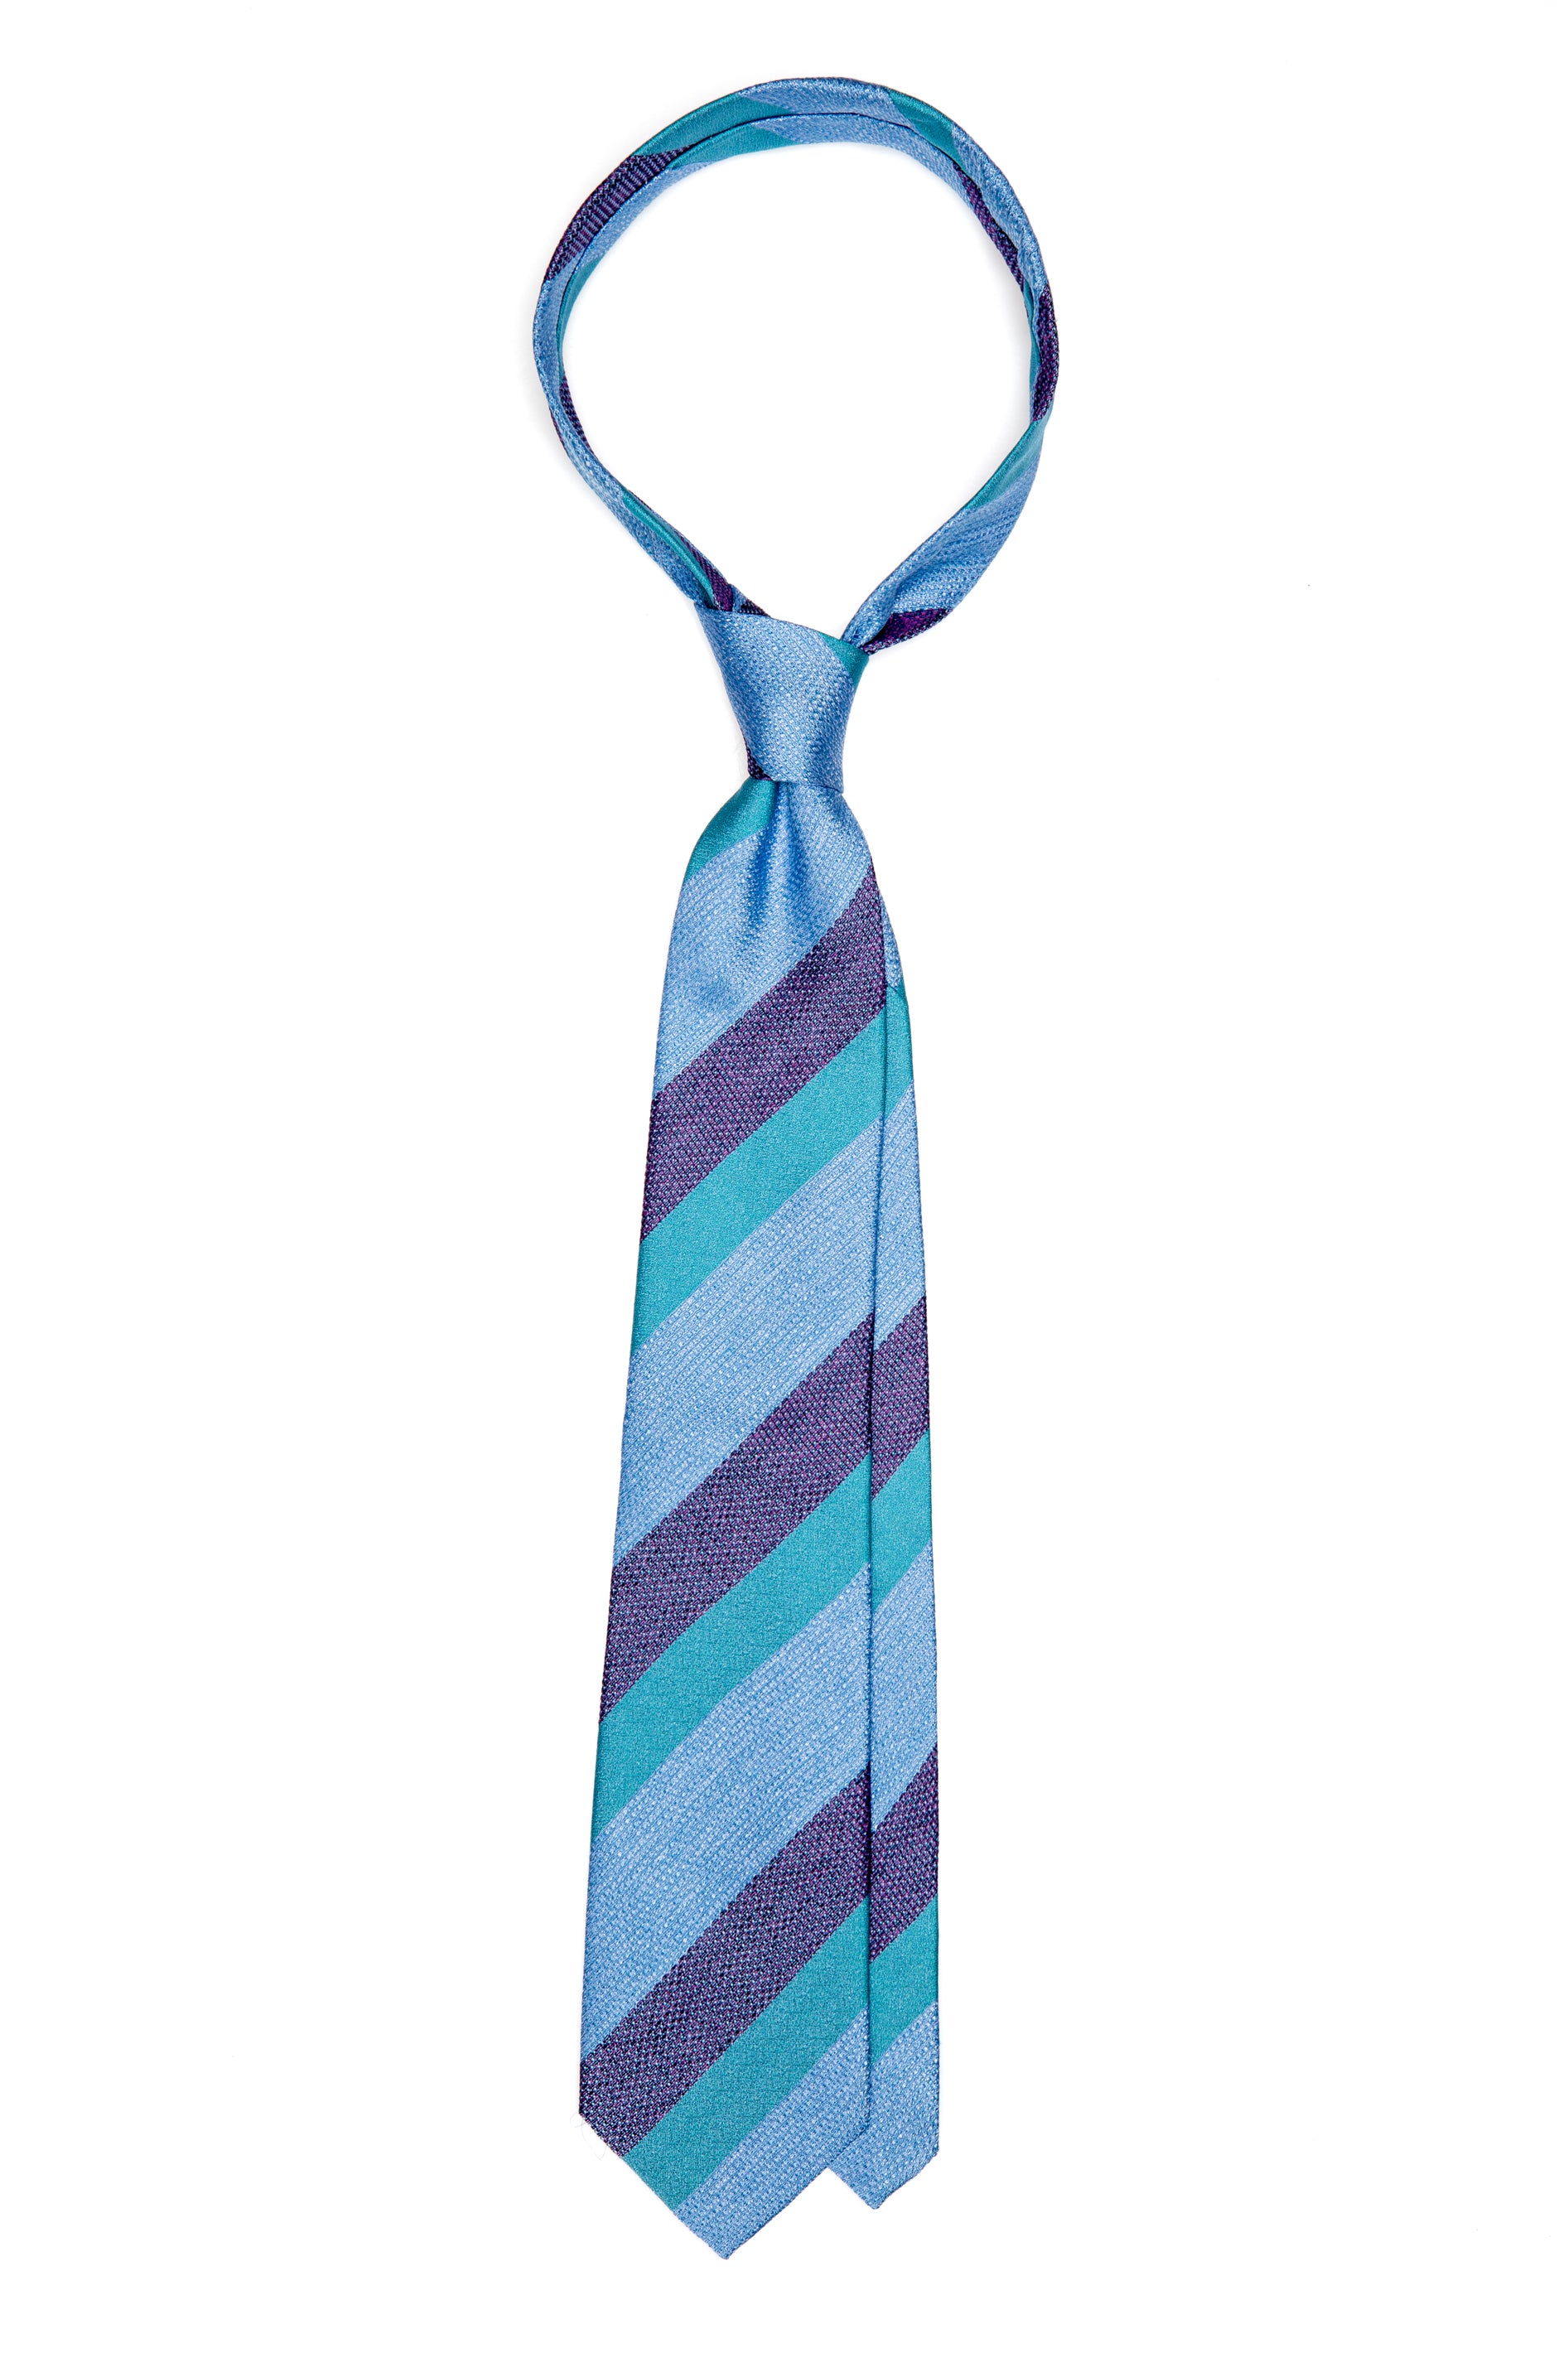 Cravatta in seta blu a righe larghe